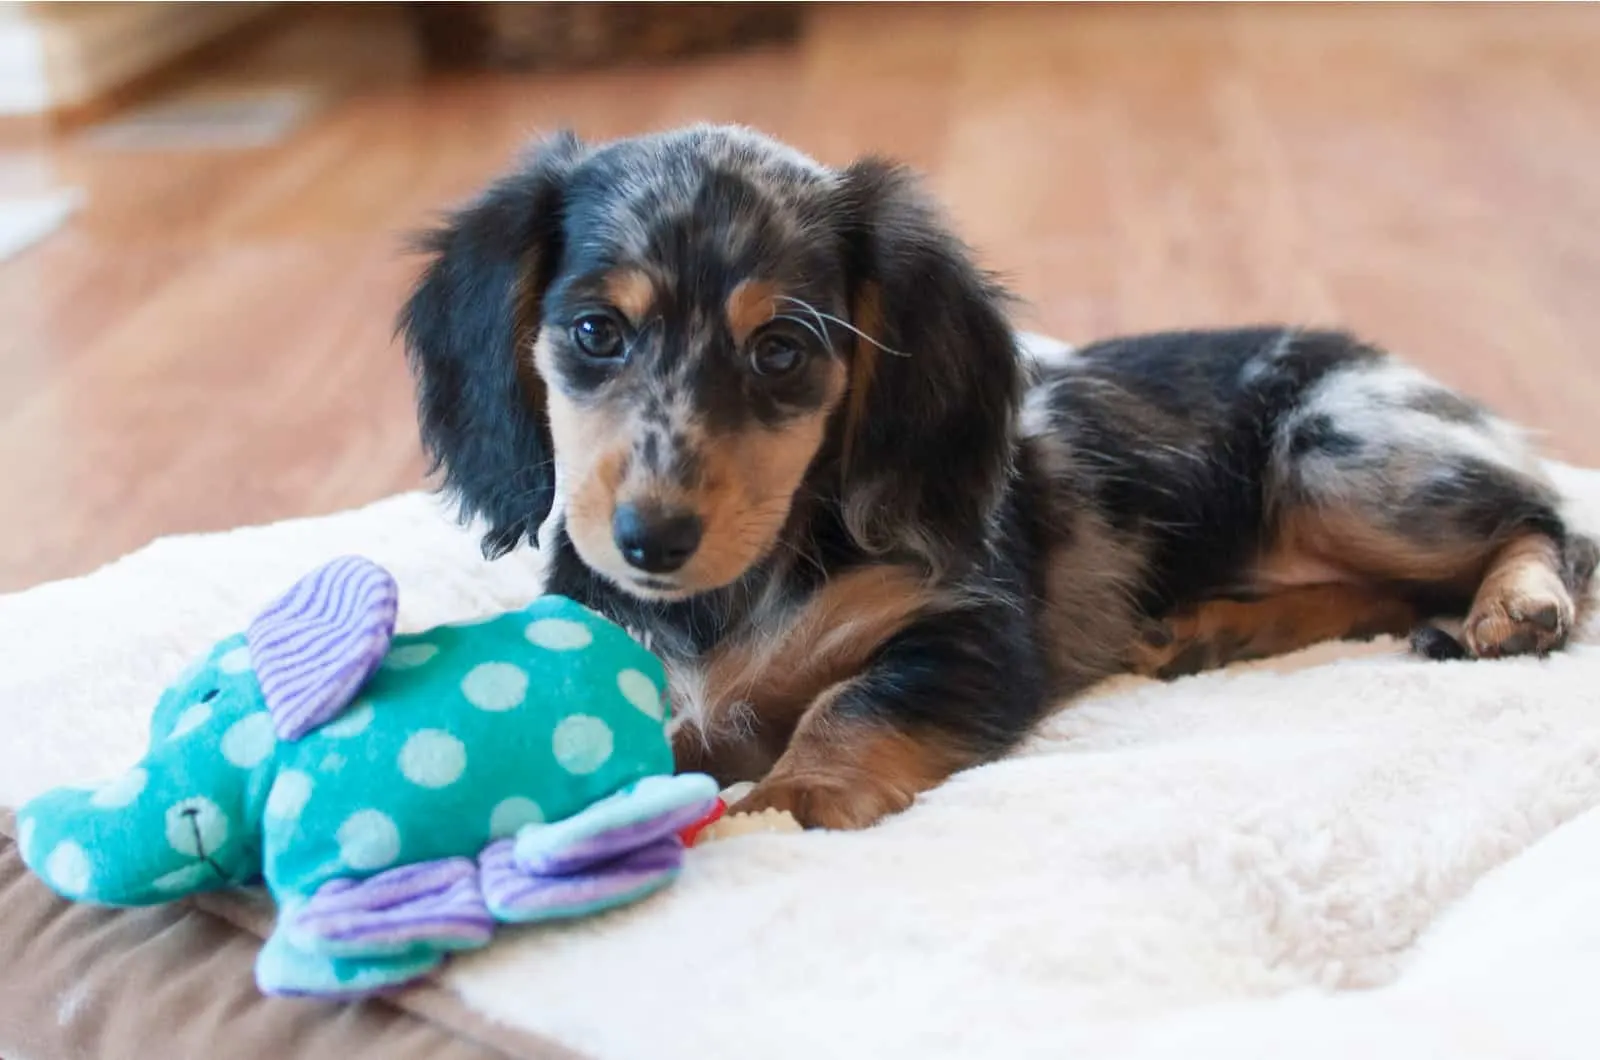 dapple dachshund puppy with toy